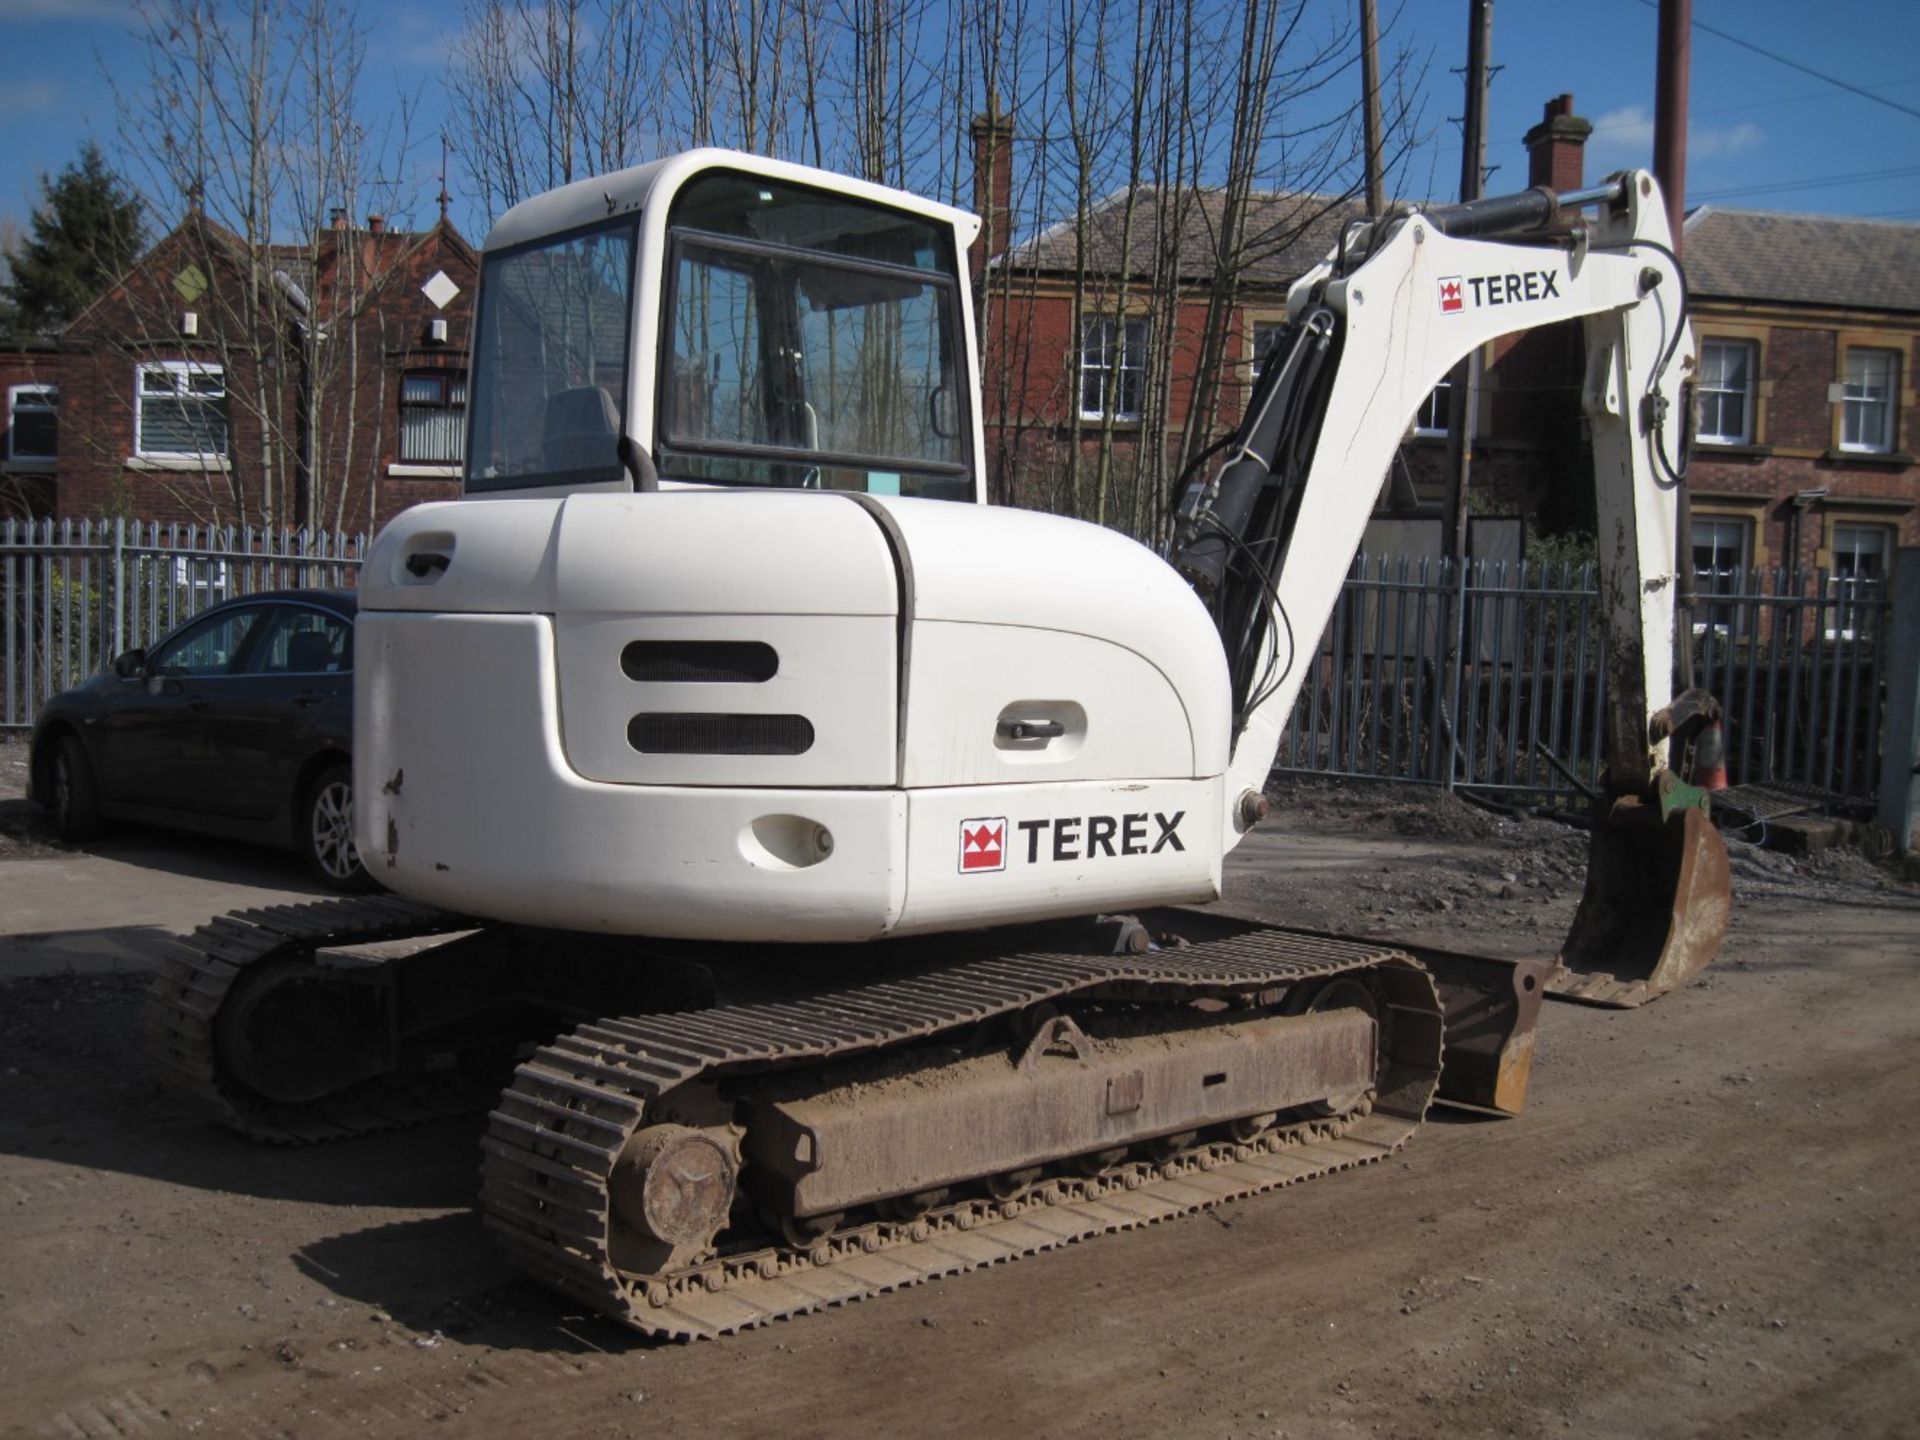 2004, Terex HR32 Excavator - Image 2 of 2